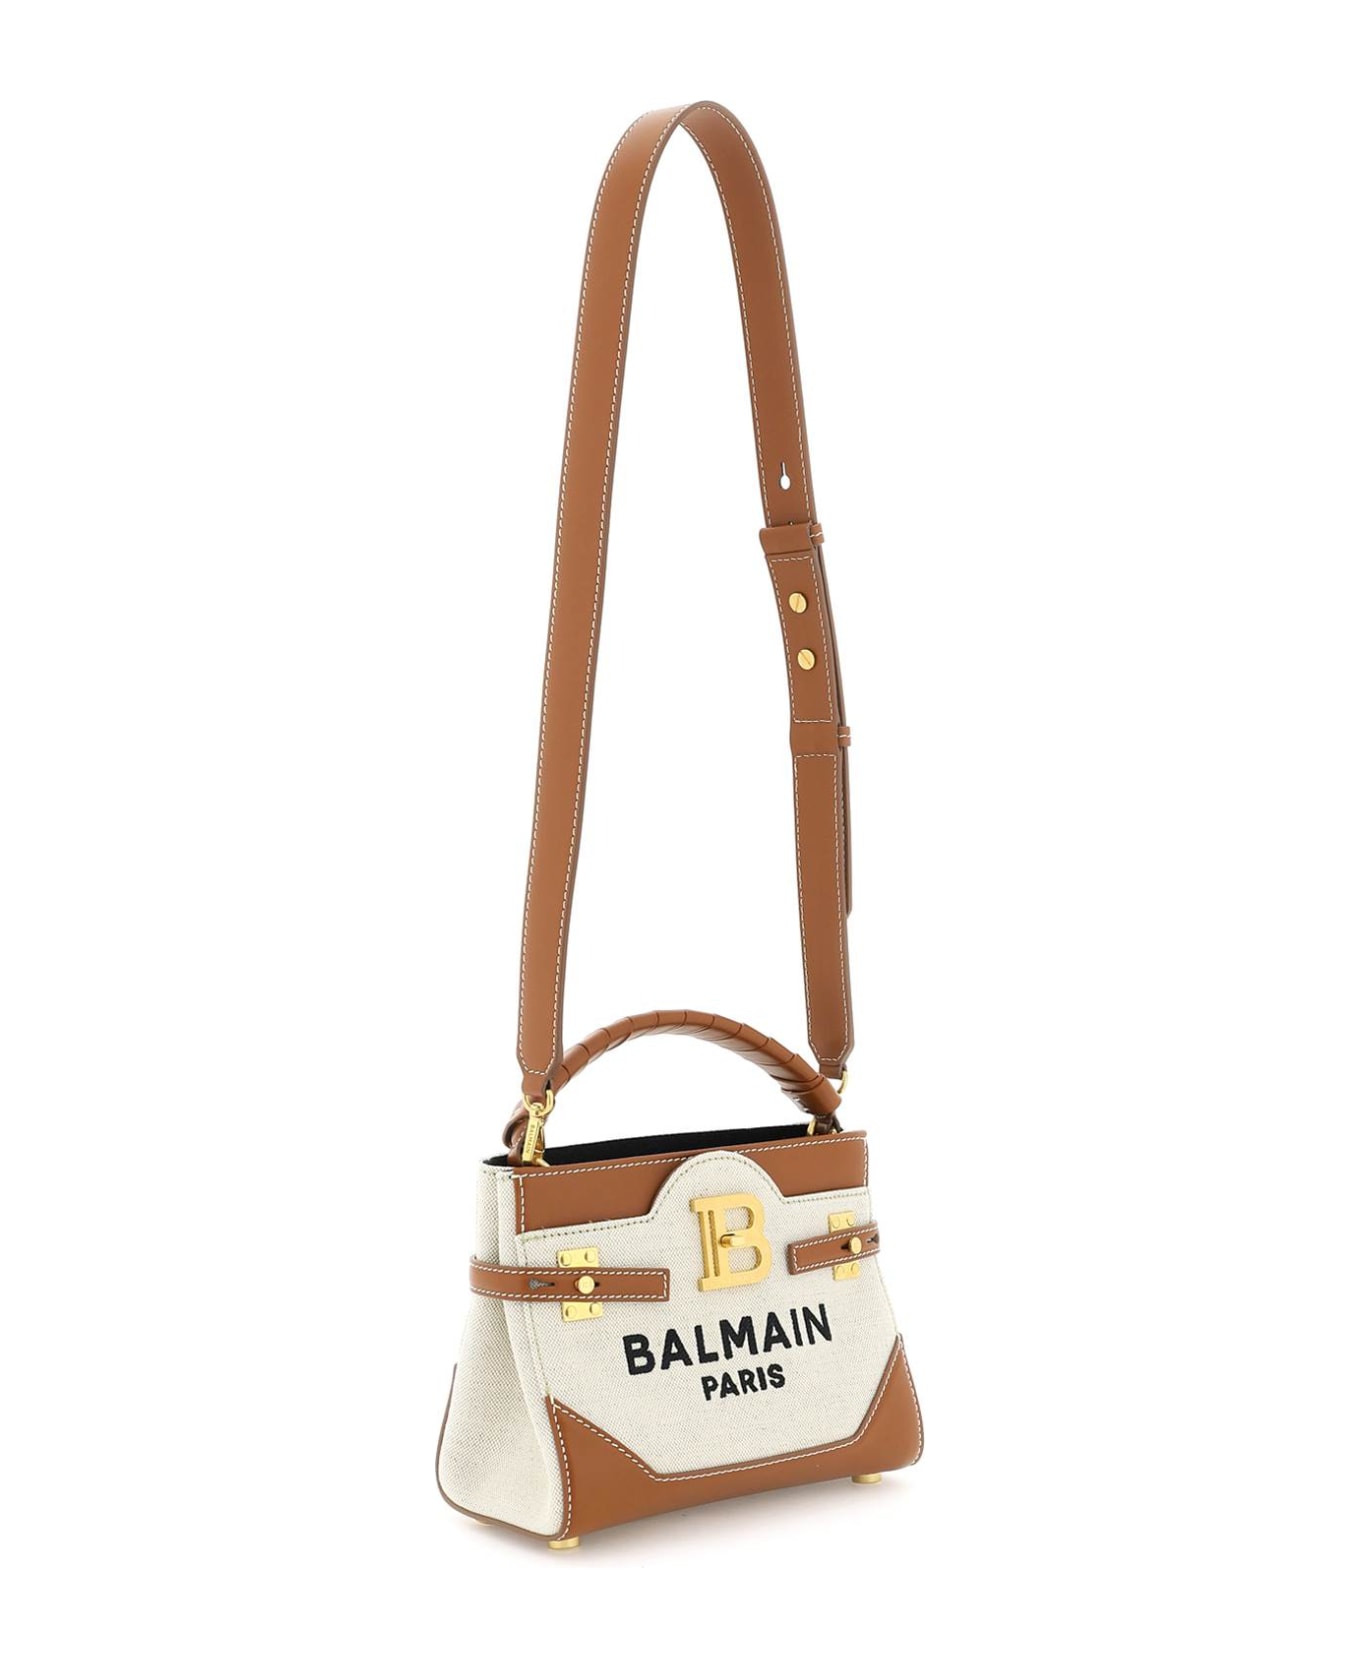 Balmain B-buzz Handbag - Beige トートバッグ